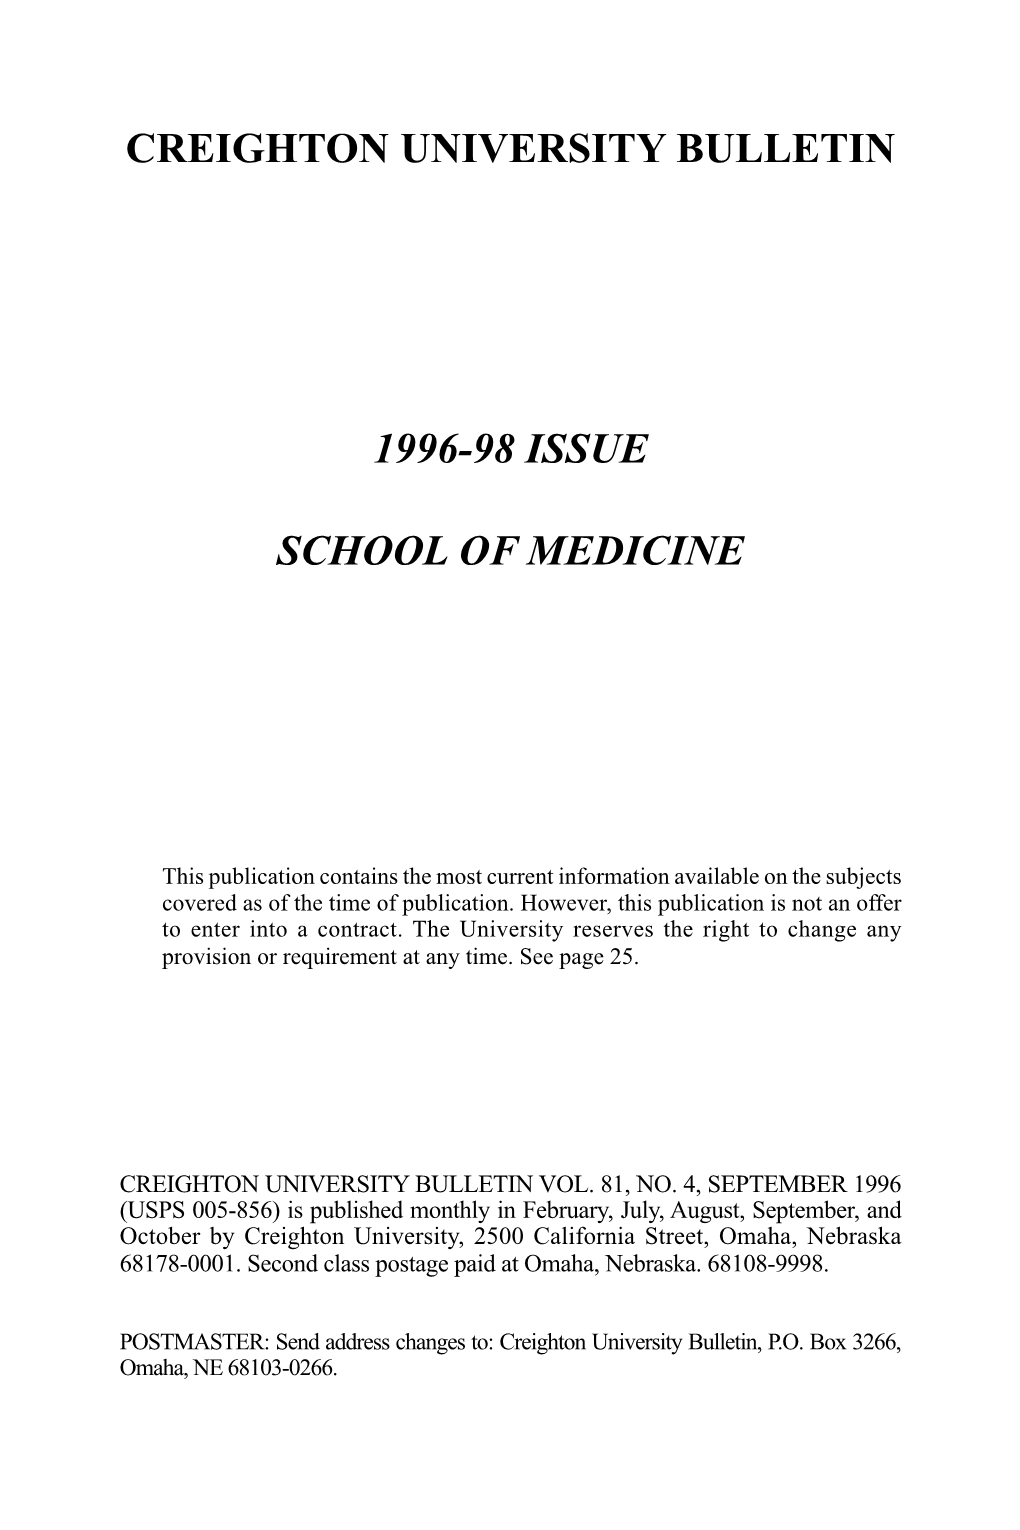 Creighton University Bulletin 1996-98 Issue School Of